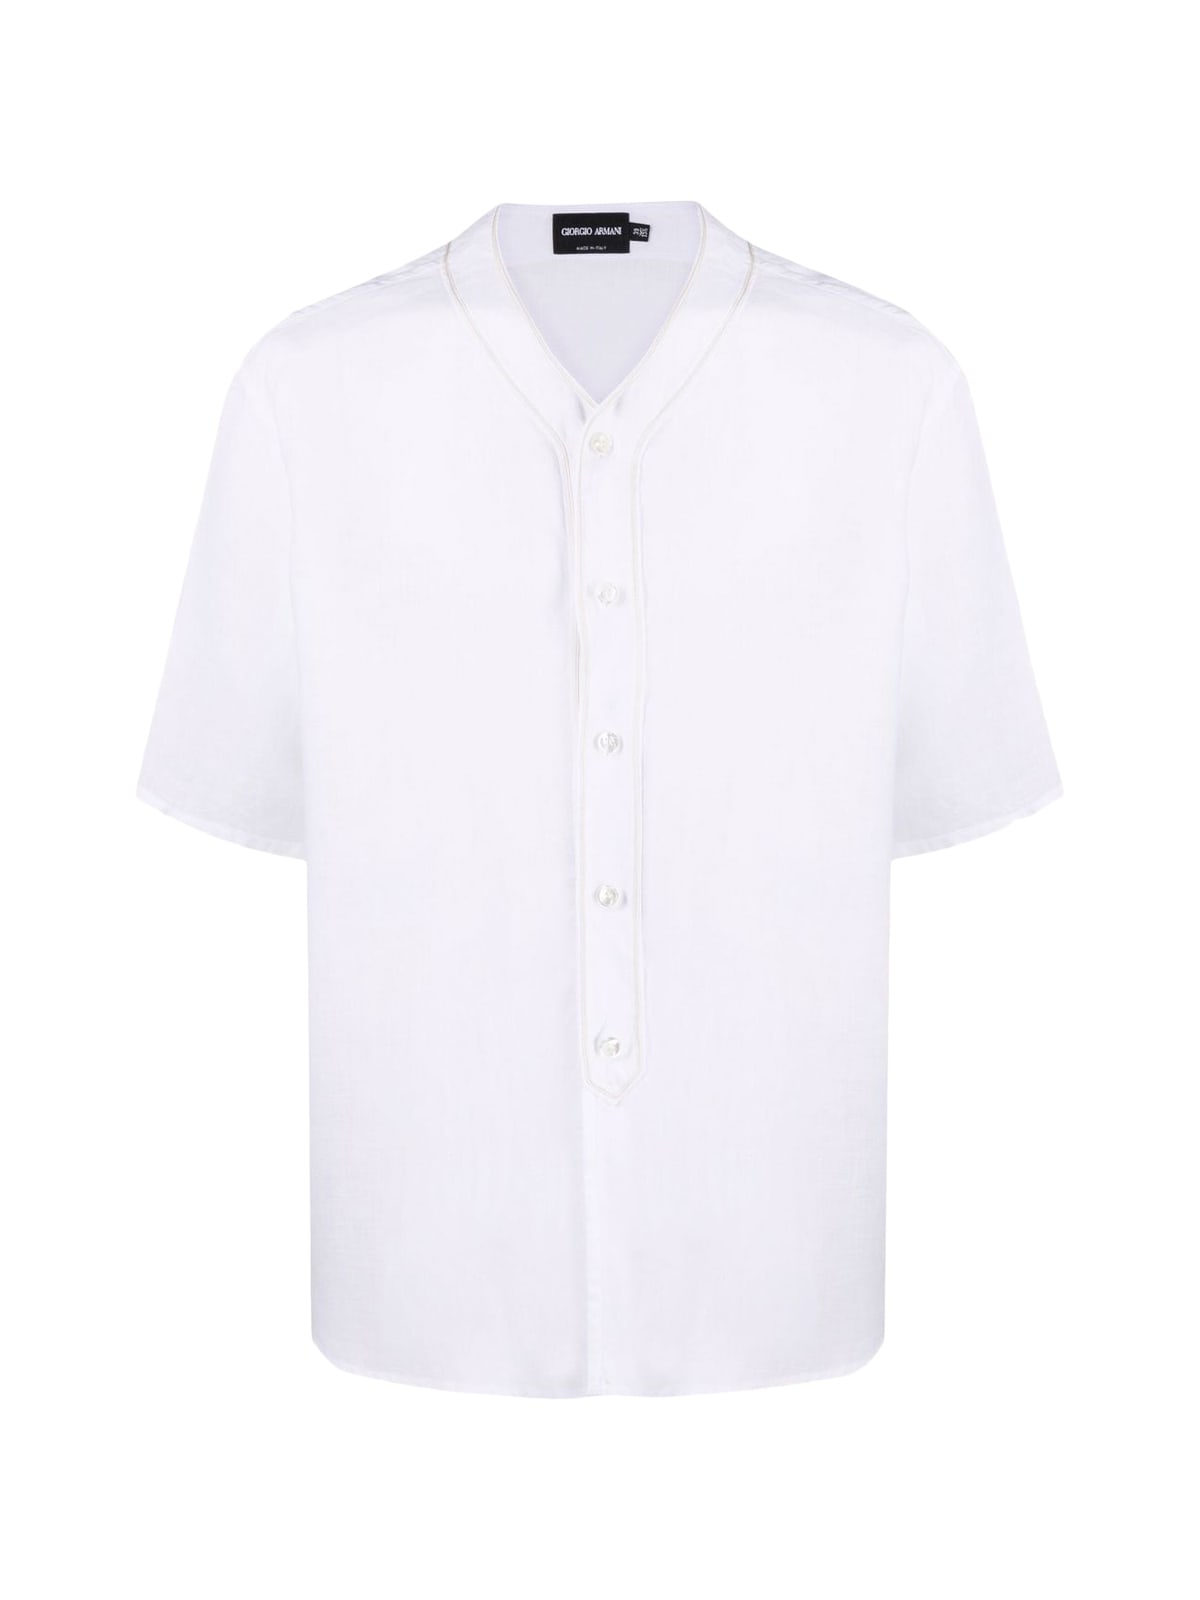 Giorgio Armani Fashion Shirt